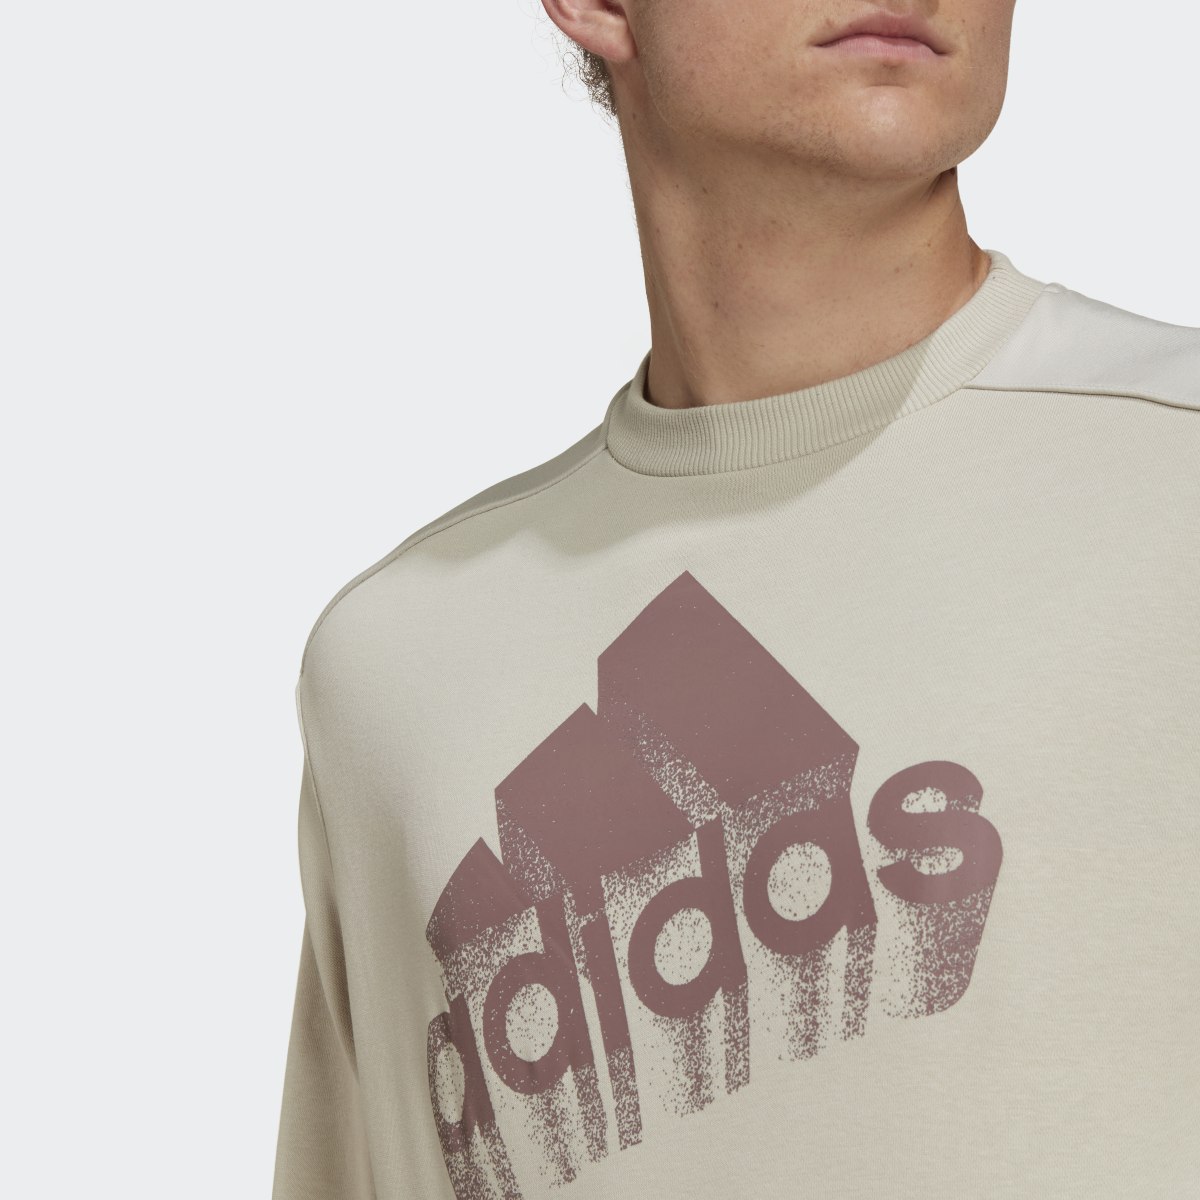 Adidas Essentials Brand Love French Terry Sweatshirt – Genderneutral. 5